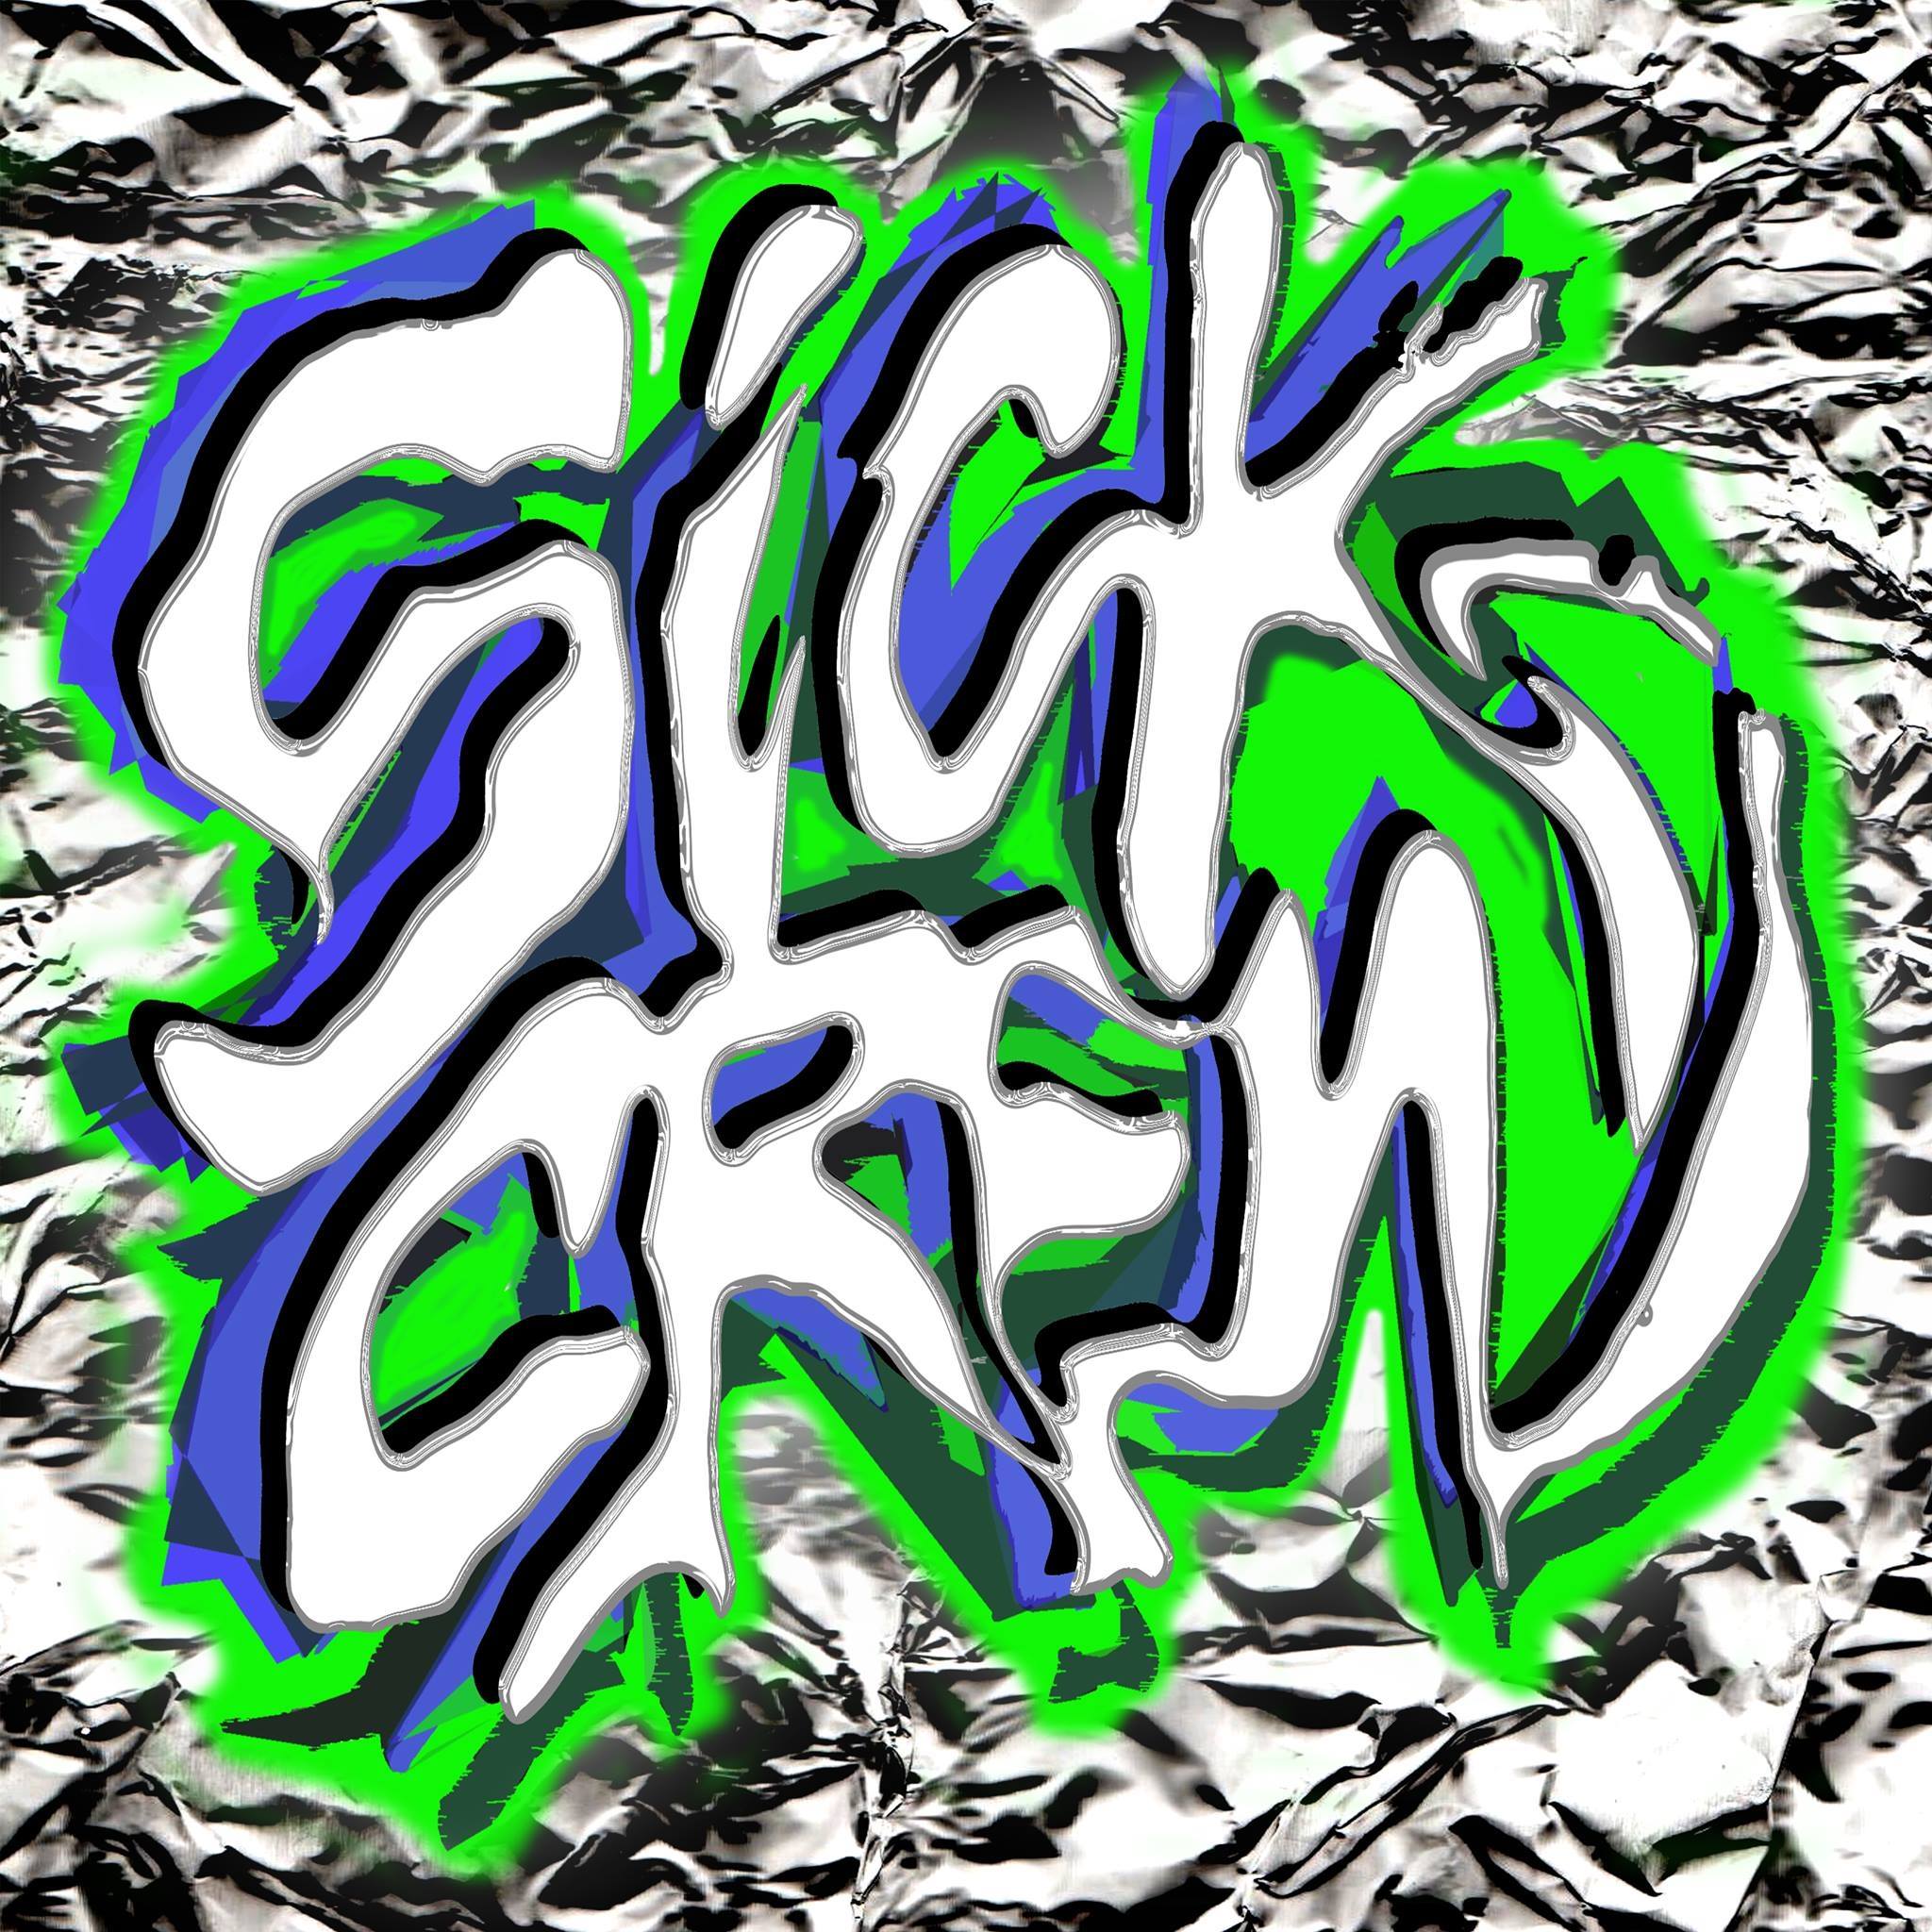 Sick Crew Logo